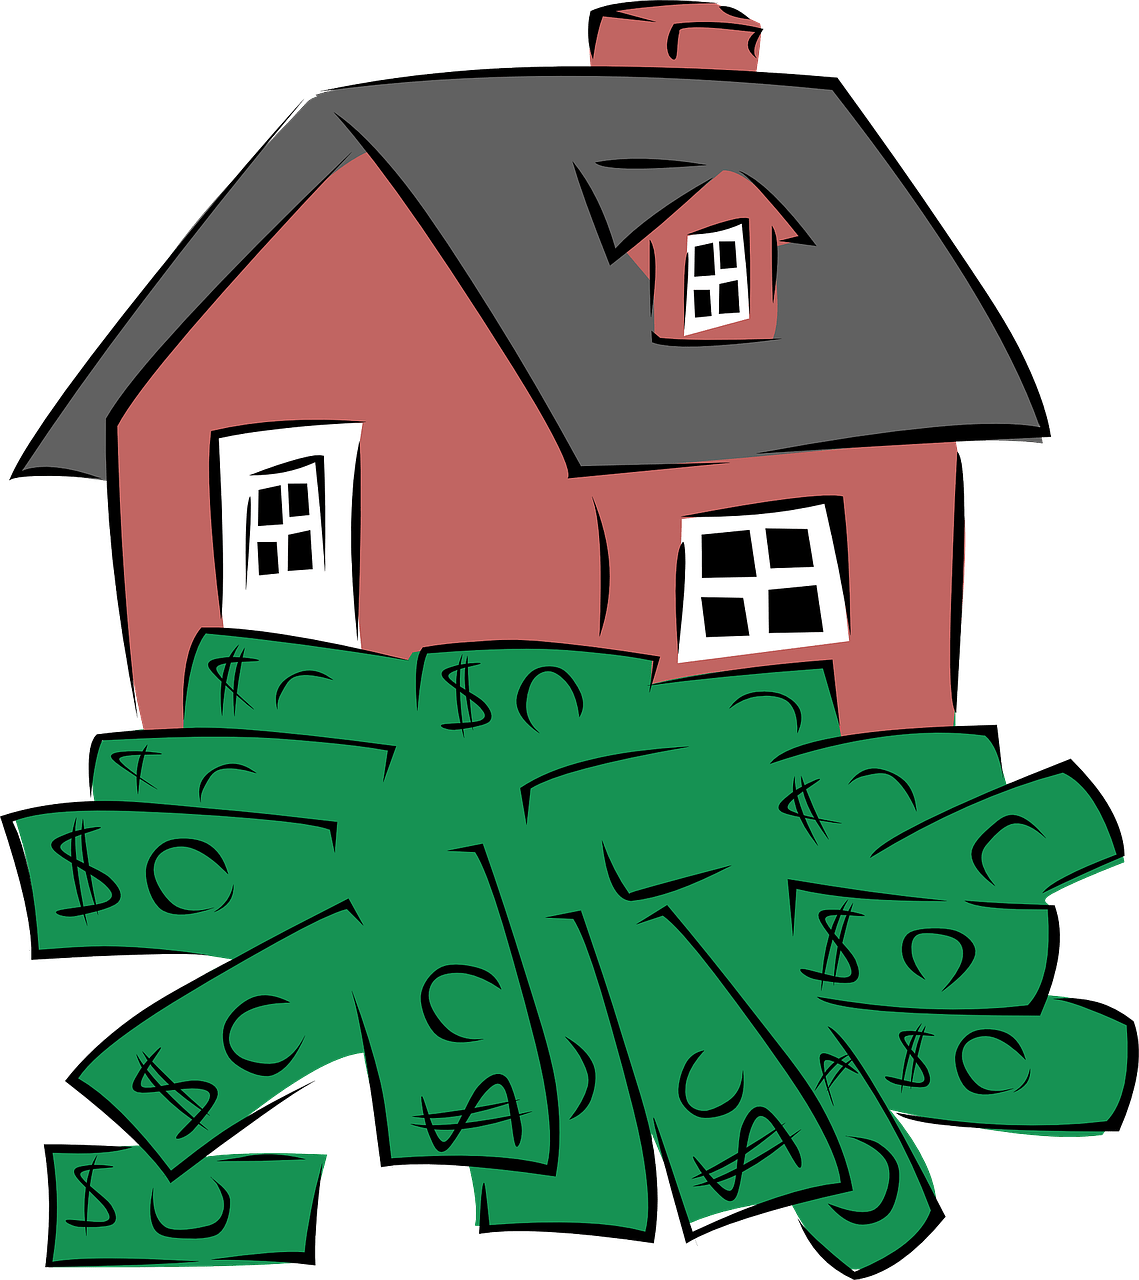 Mutuo immobiliare: quali documenti servono per richiedere uno